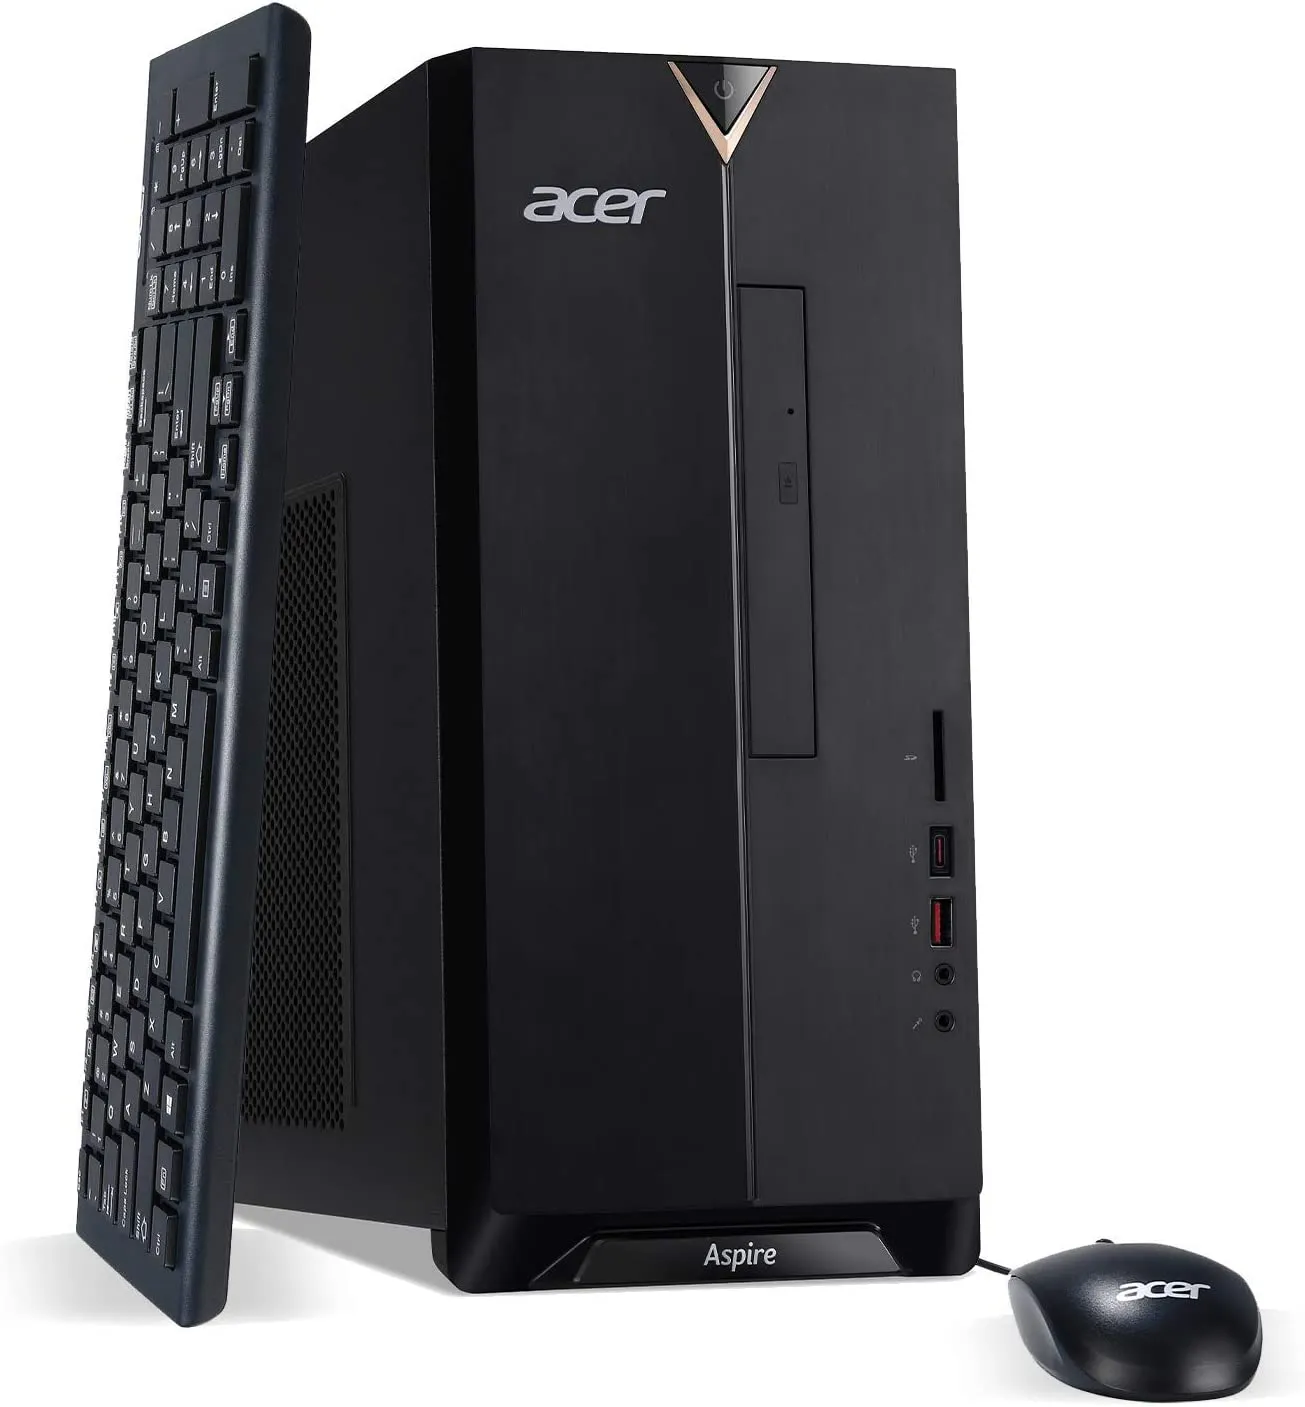 Acer Aspire Best Budget Gaming Desktop